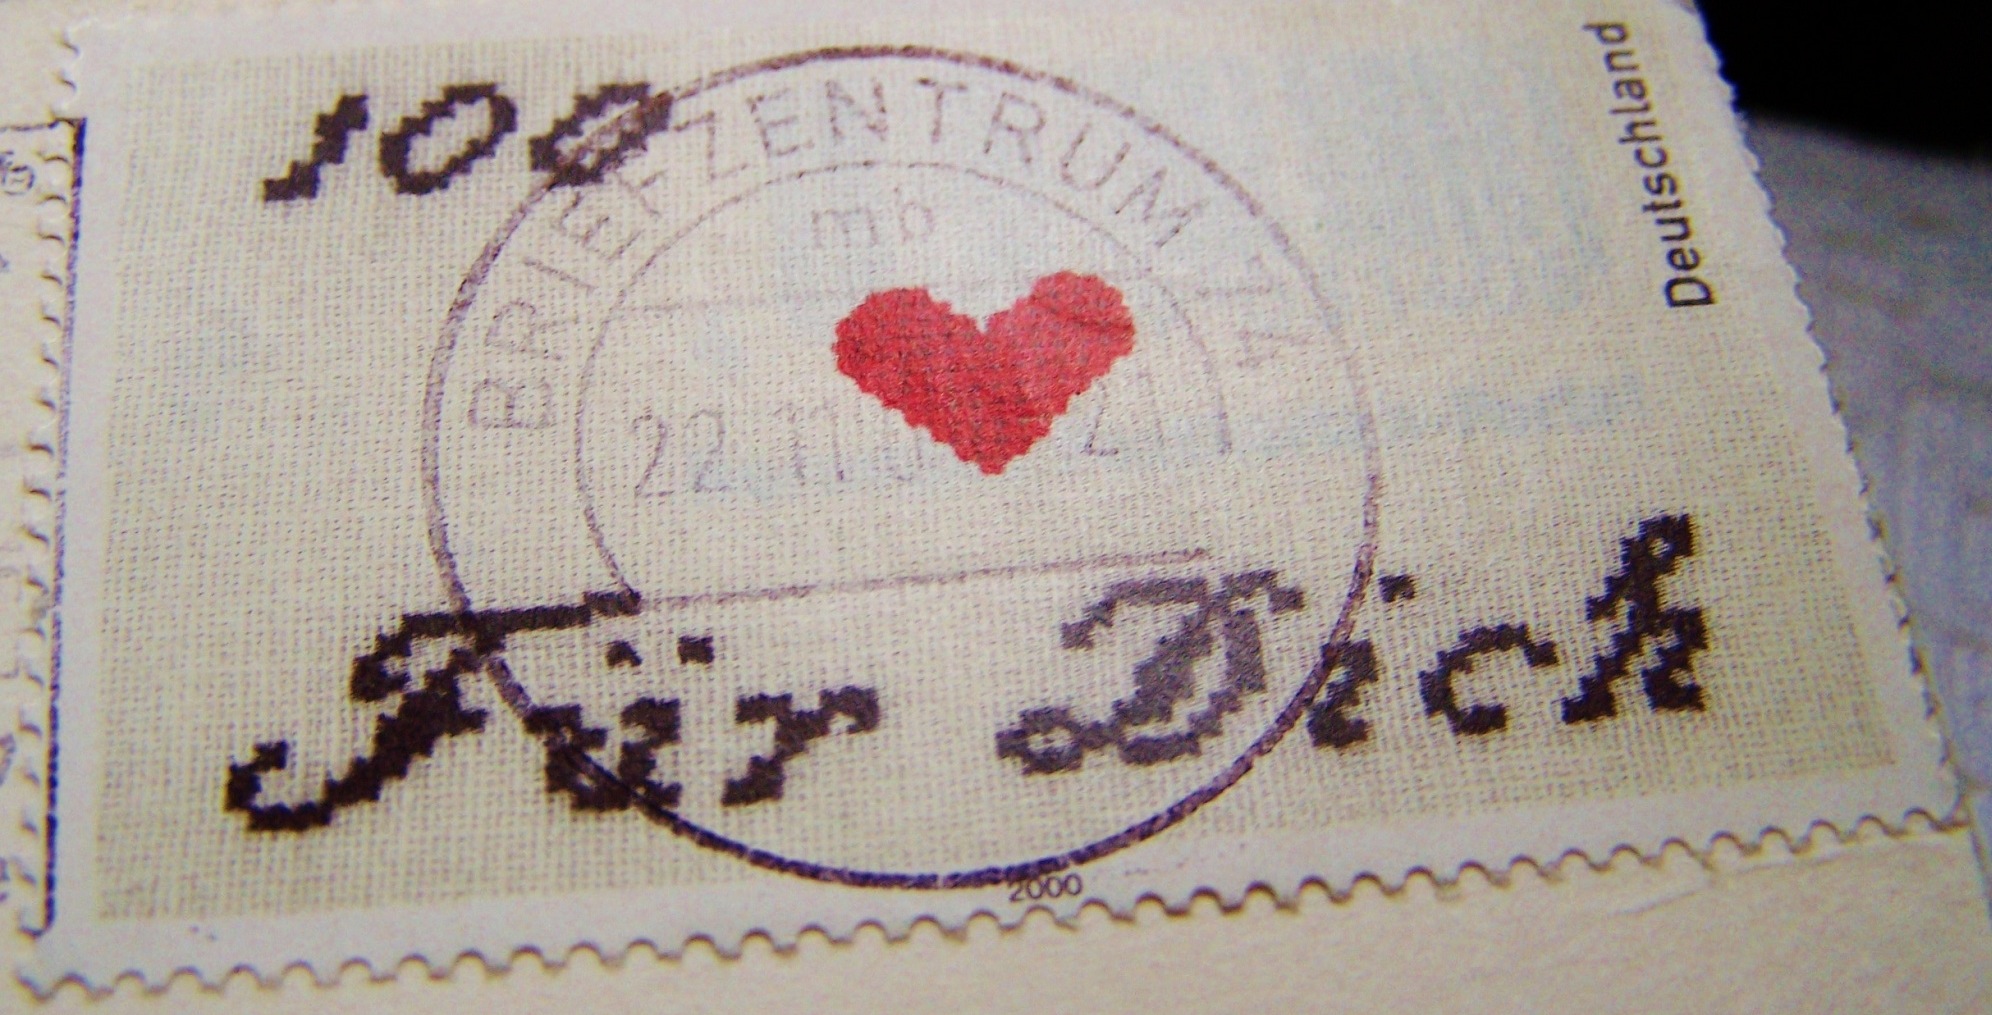 Briefmarke "Für Dich" der Deutschen Post